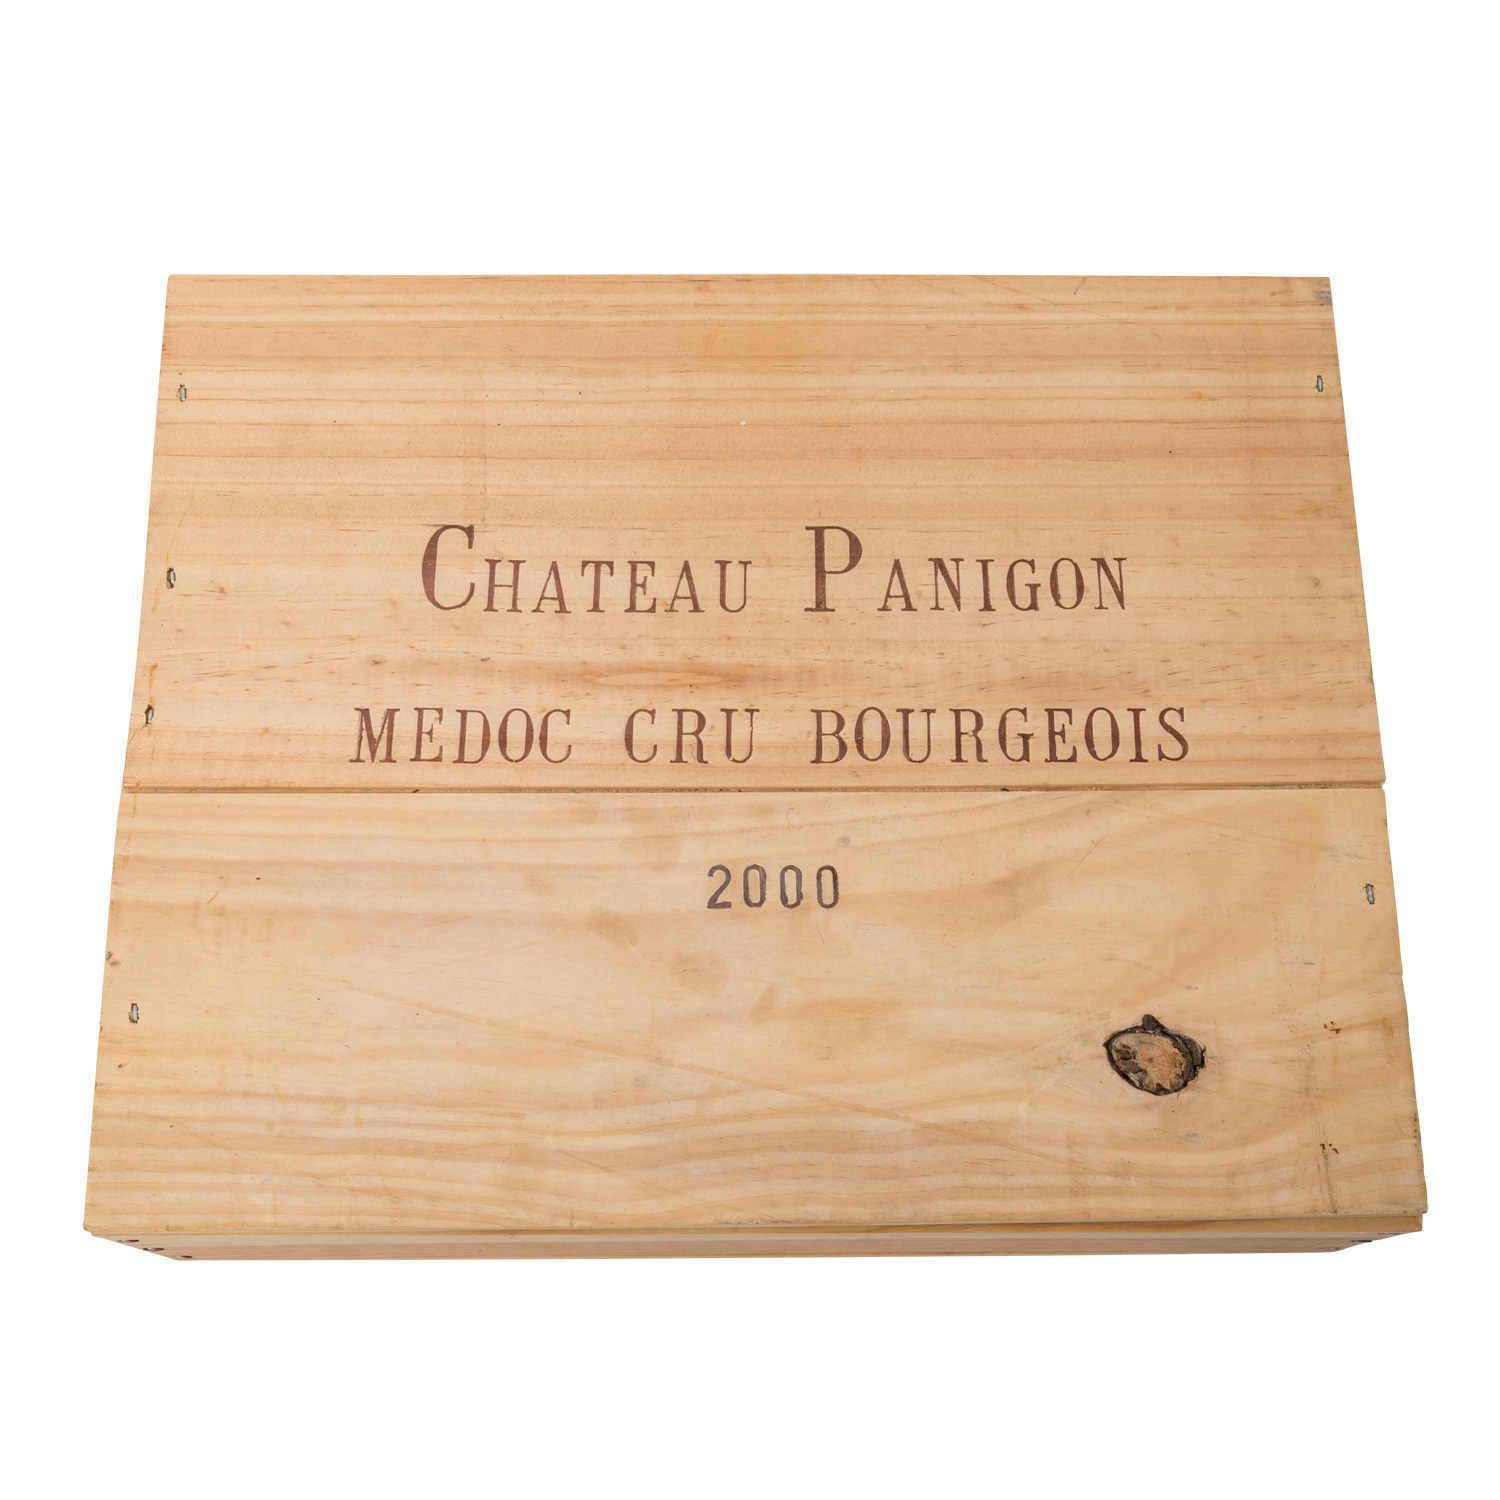 CHÂTEAU DE PANIGON 2 Flaschen MEDOC in ungeöffneter Holzkiste, 2000Cru Bourgeois, Re - Image 2 of 2